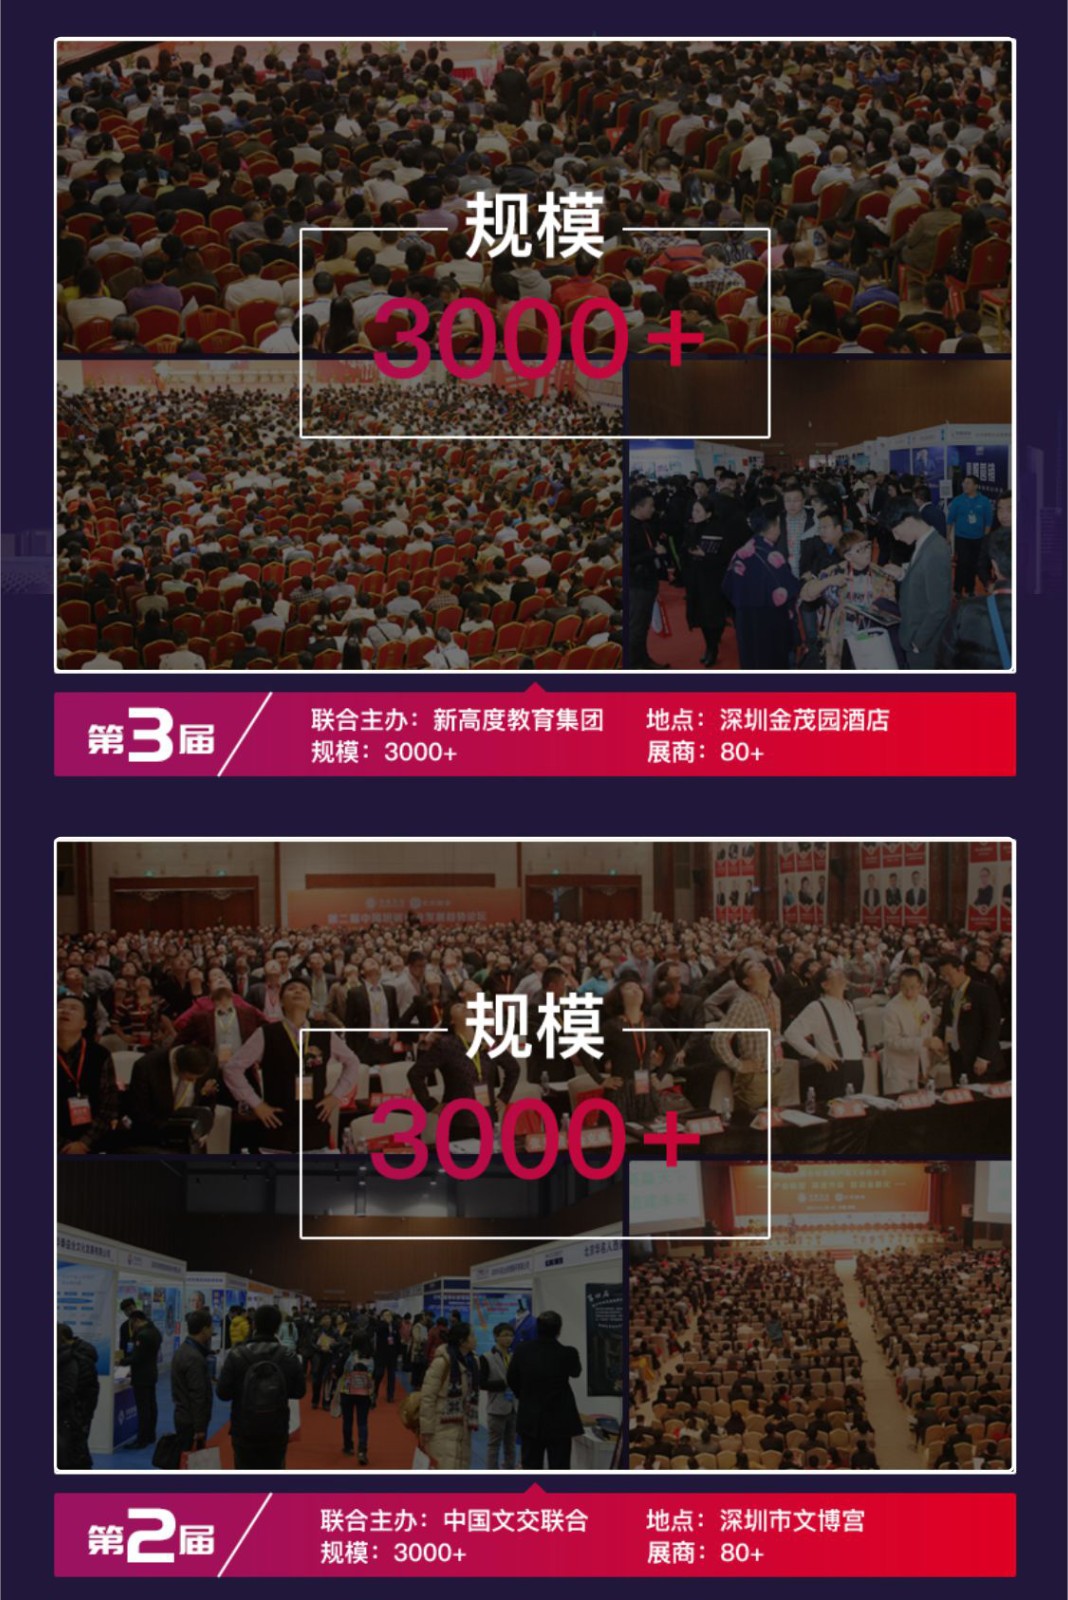 2019国际培训产品博览会(培博会)宣传H5长图(1)_15.jpg